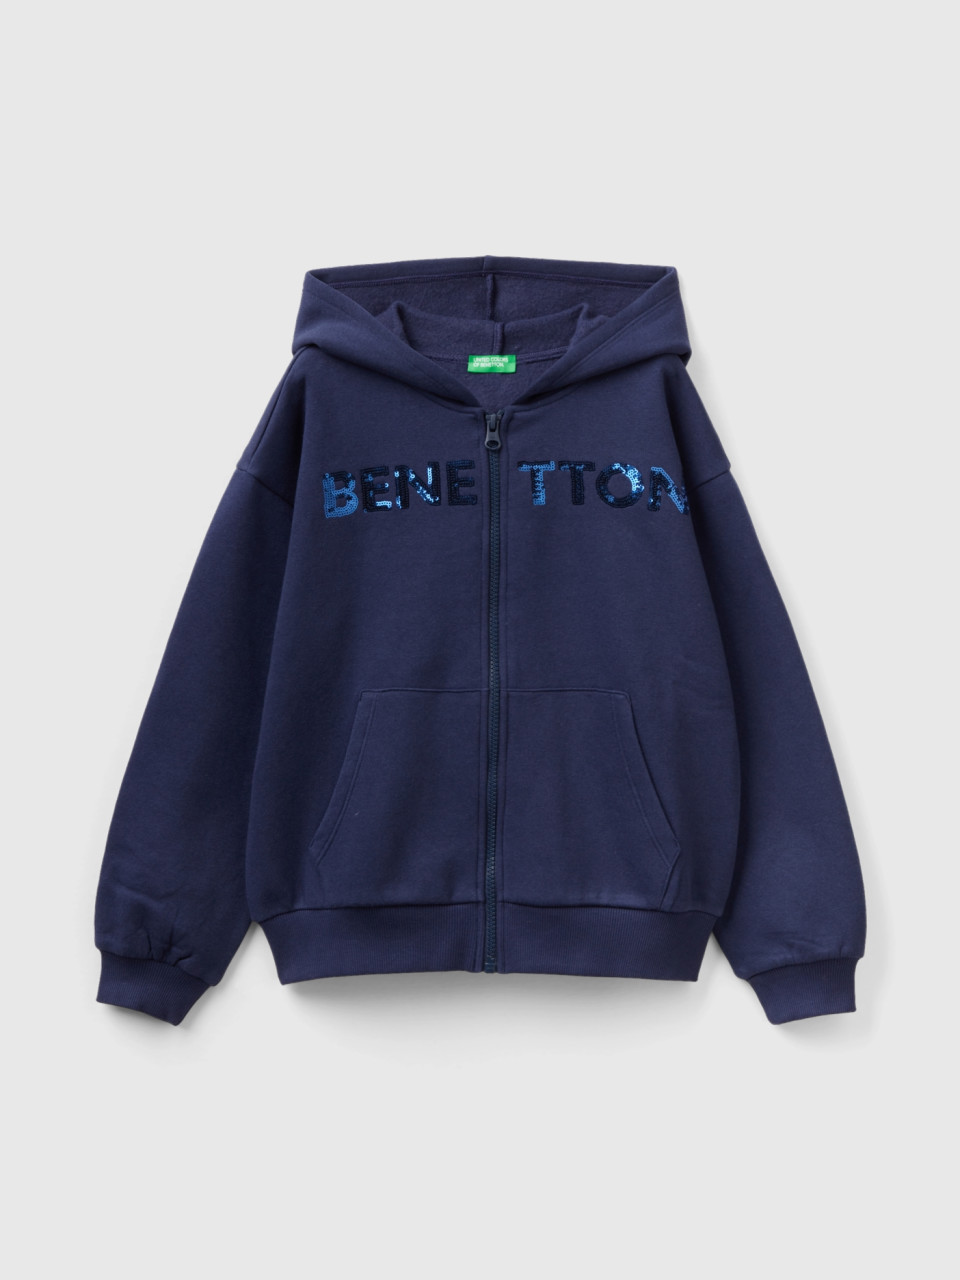 Benetton, Sweatshirt With Zip And Sequins, Dark Blue, Kids